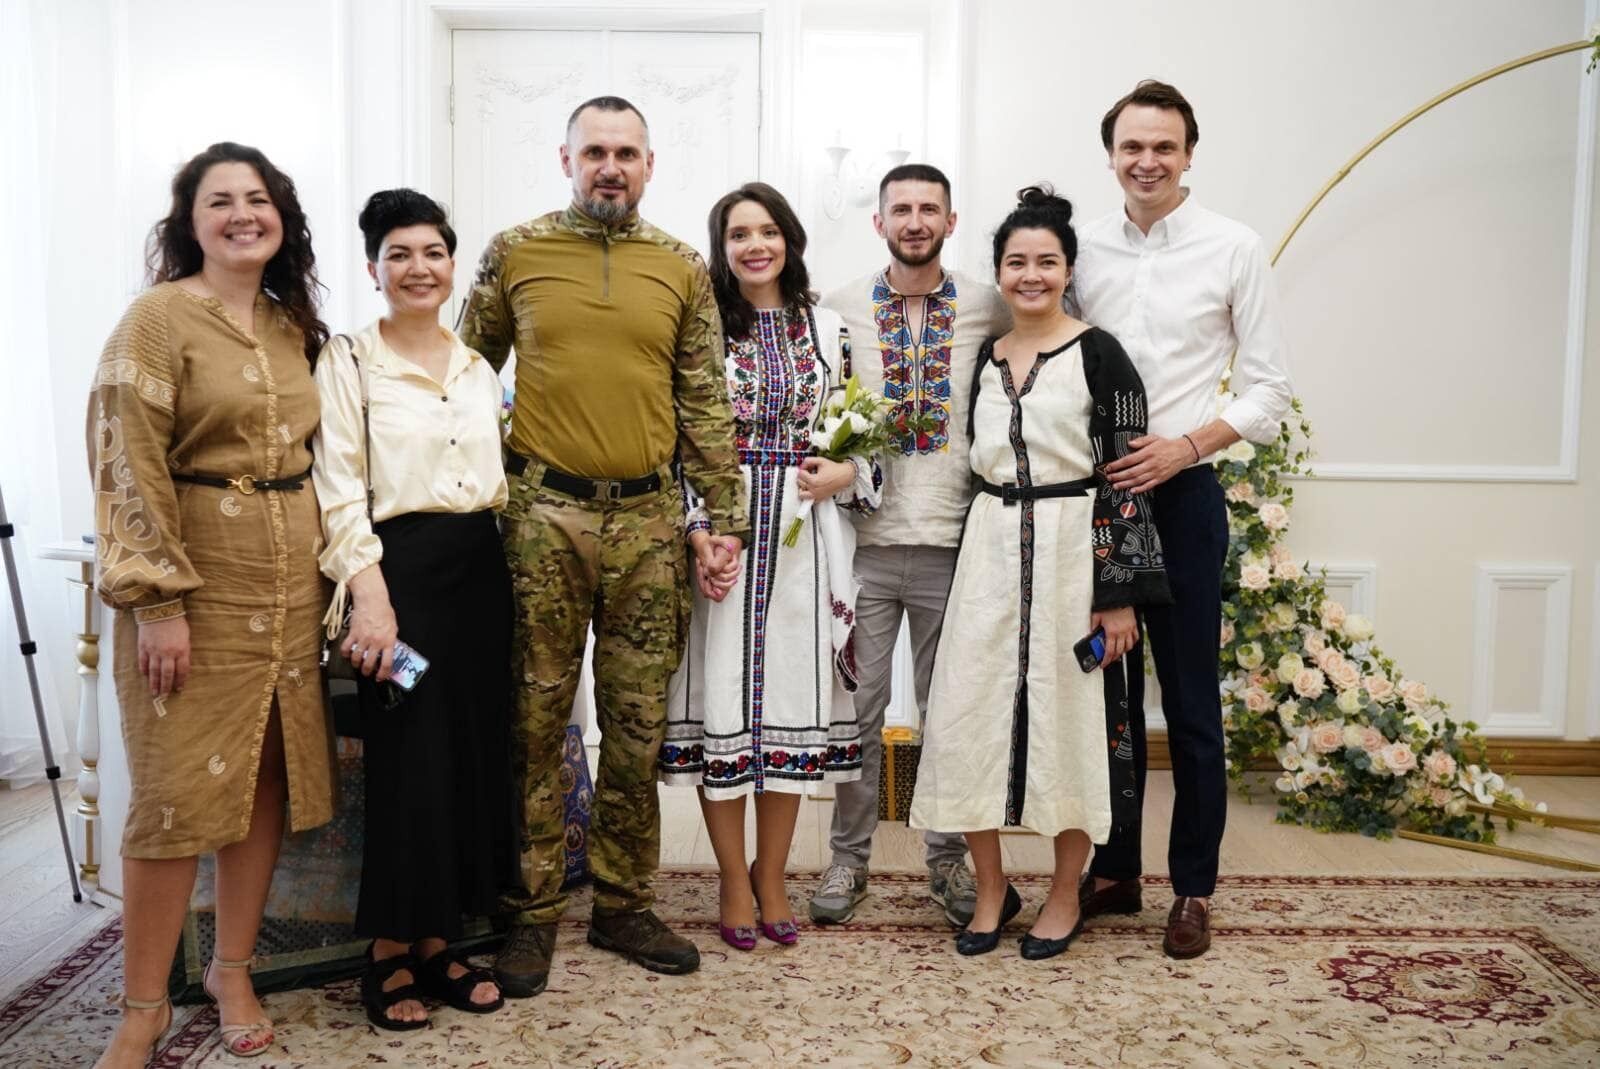 Олег Сенцов второй раз женился. Фото жениха и невесты